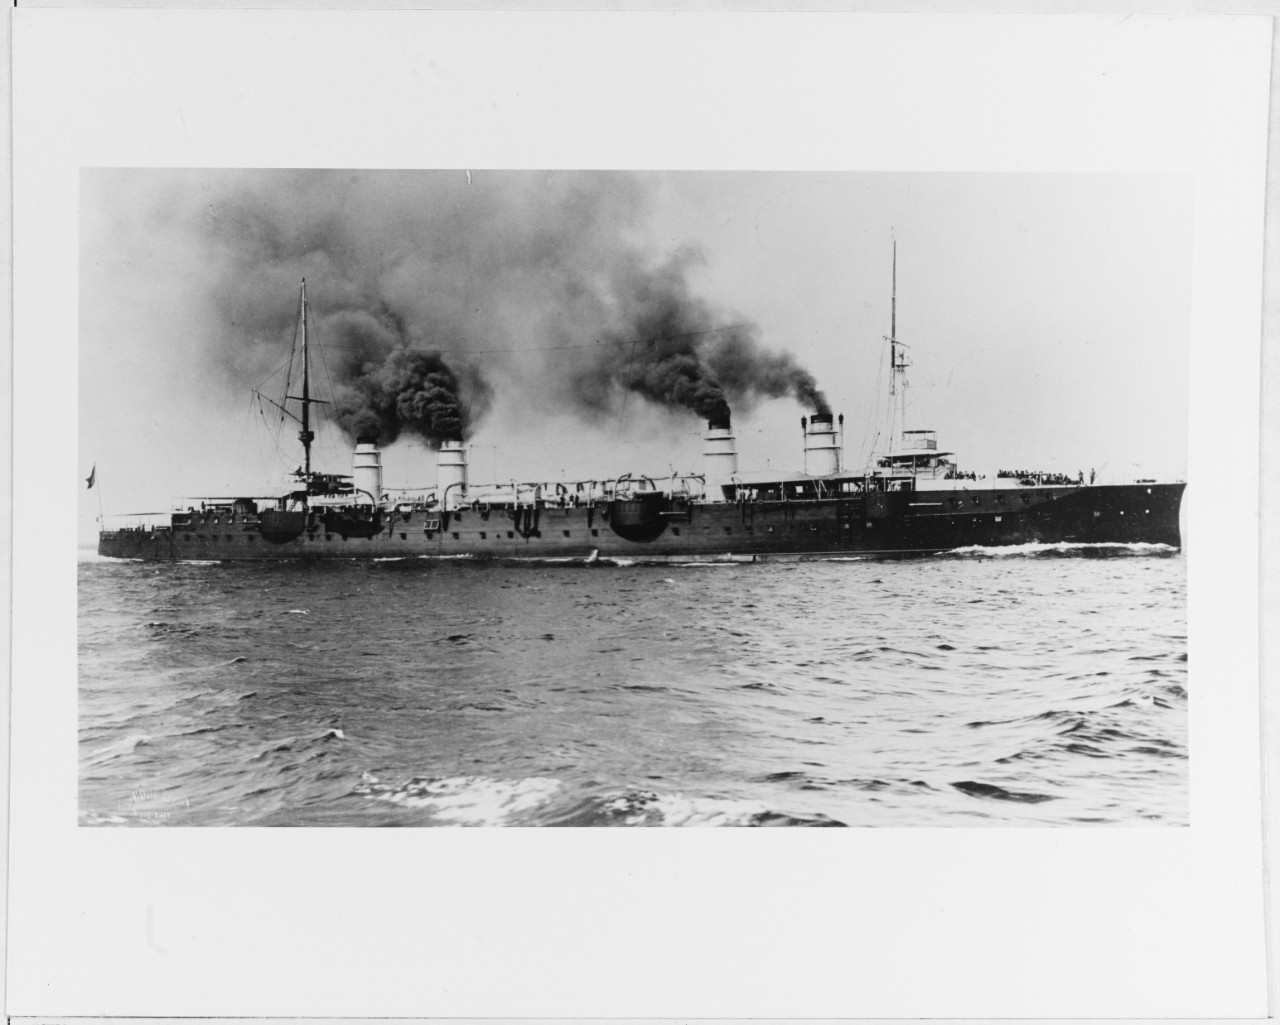 JURIEN de la GRAVIÈRE (French cruiser, 1899)